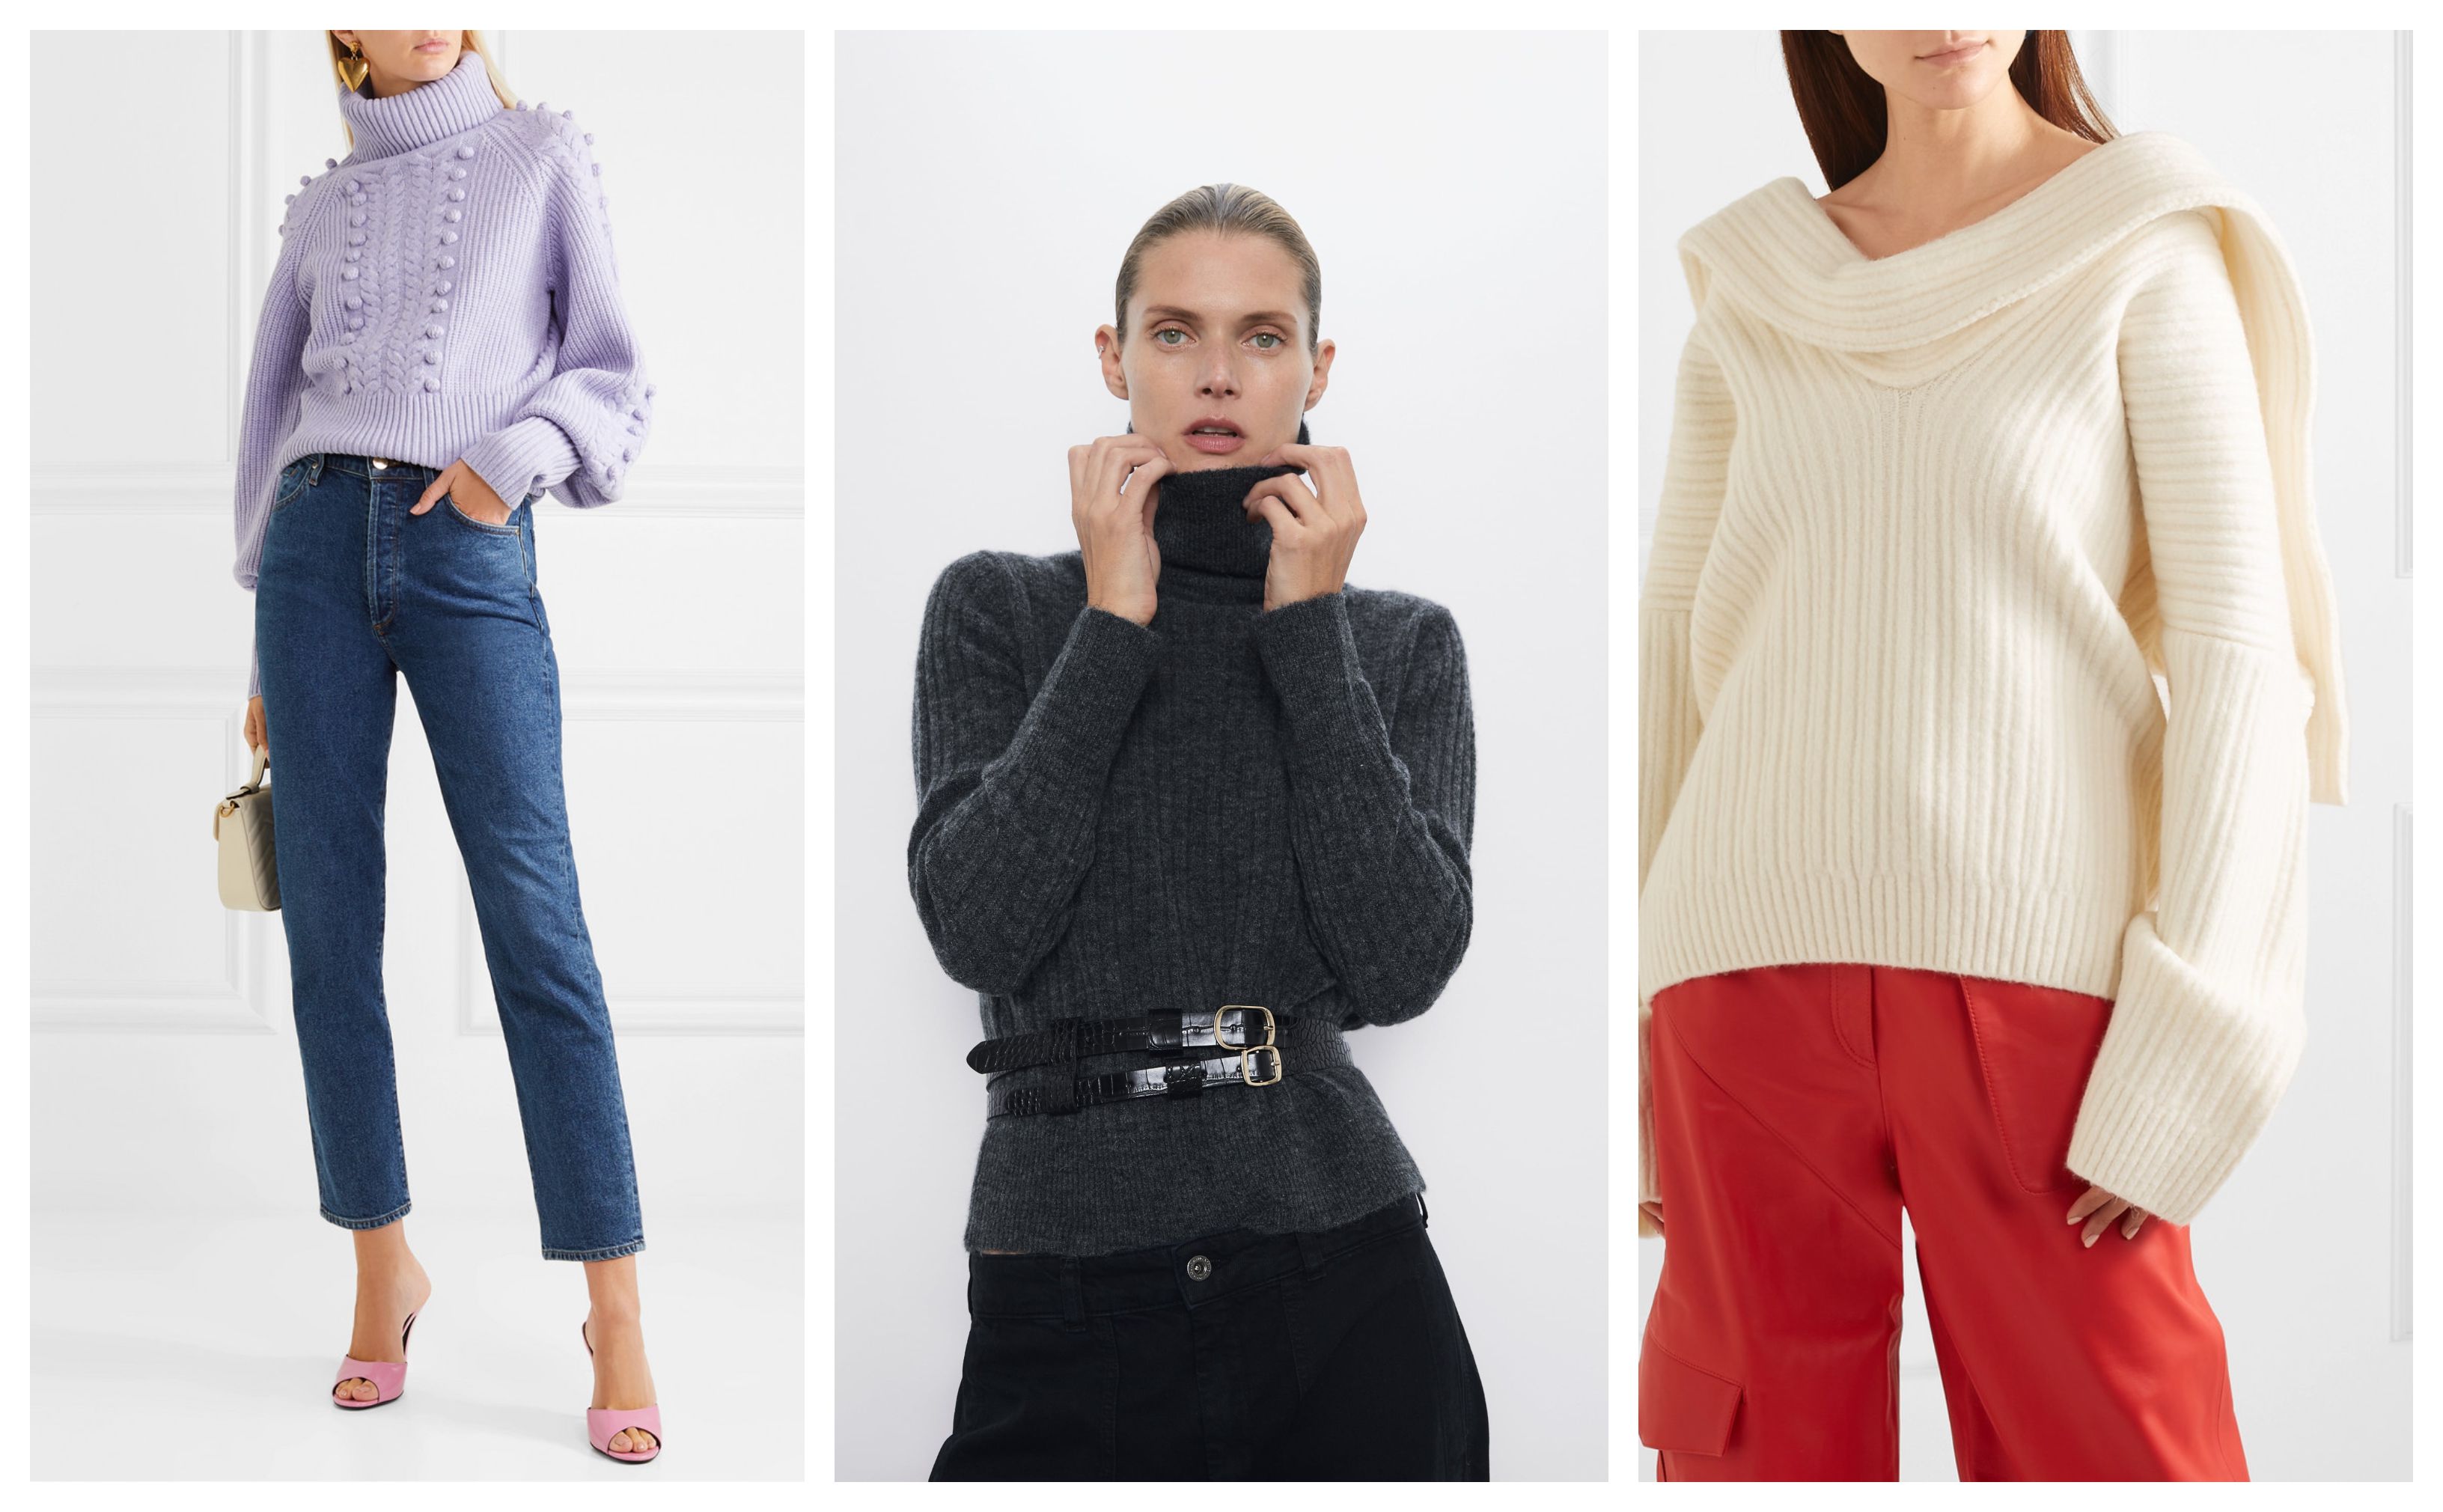 Napunite ormare najljepšim džemperima iz novih kolekcija! Pogledajte što smo odabrali